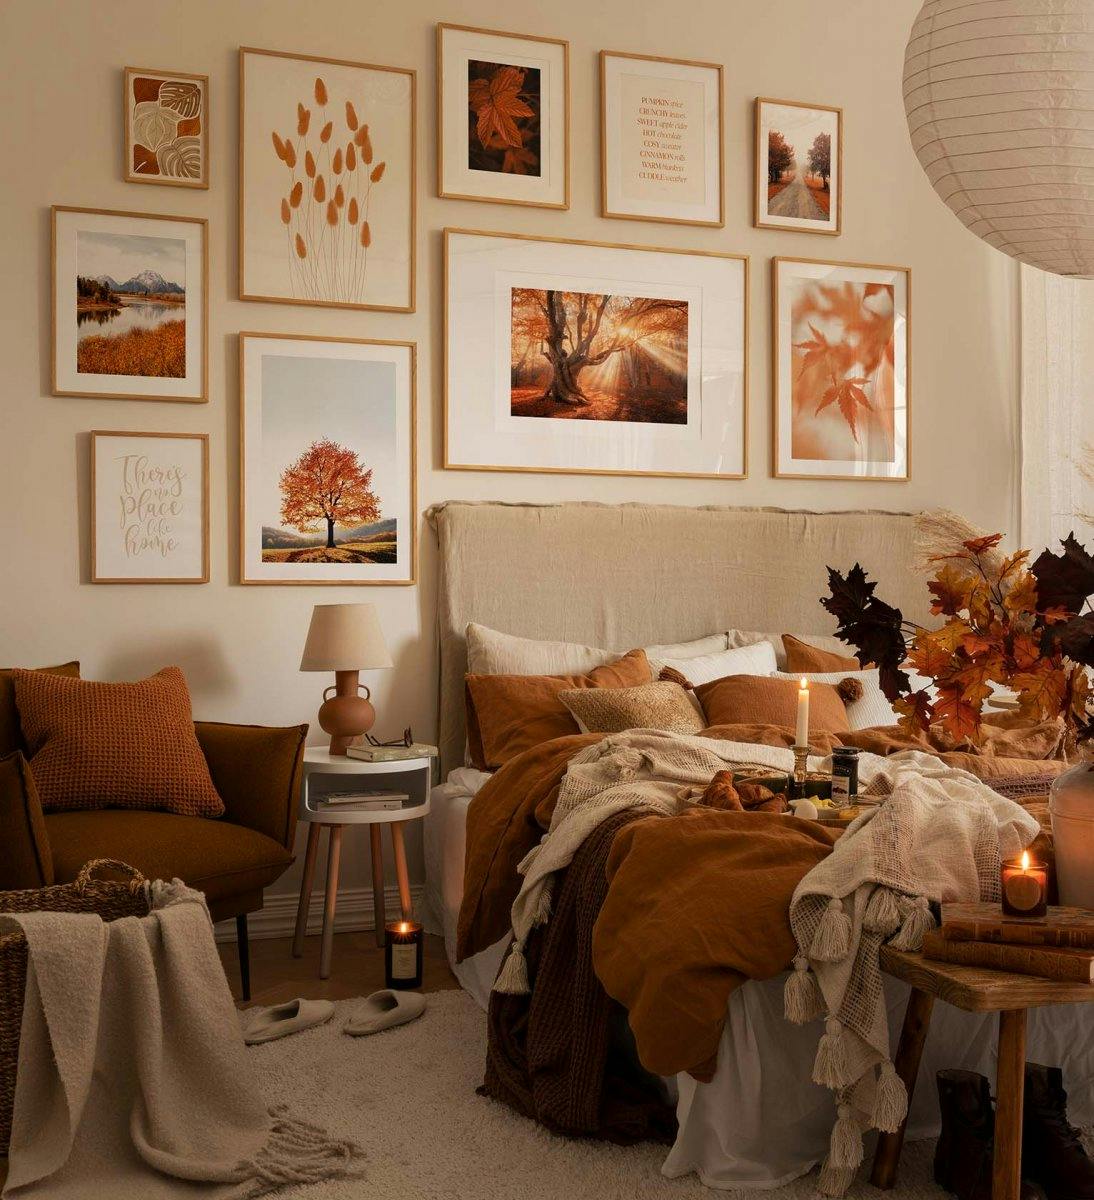 Galériafal az őszi inspirációval, narancssárga és tölgyfa keretekben lévő nyomatokkal és fényképekkel a hálószobába